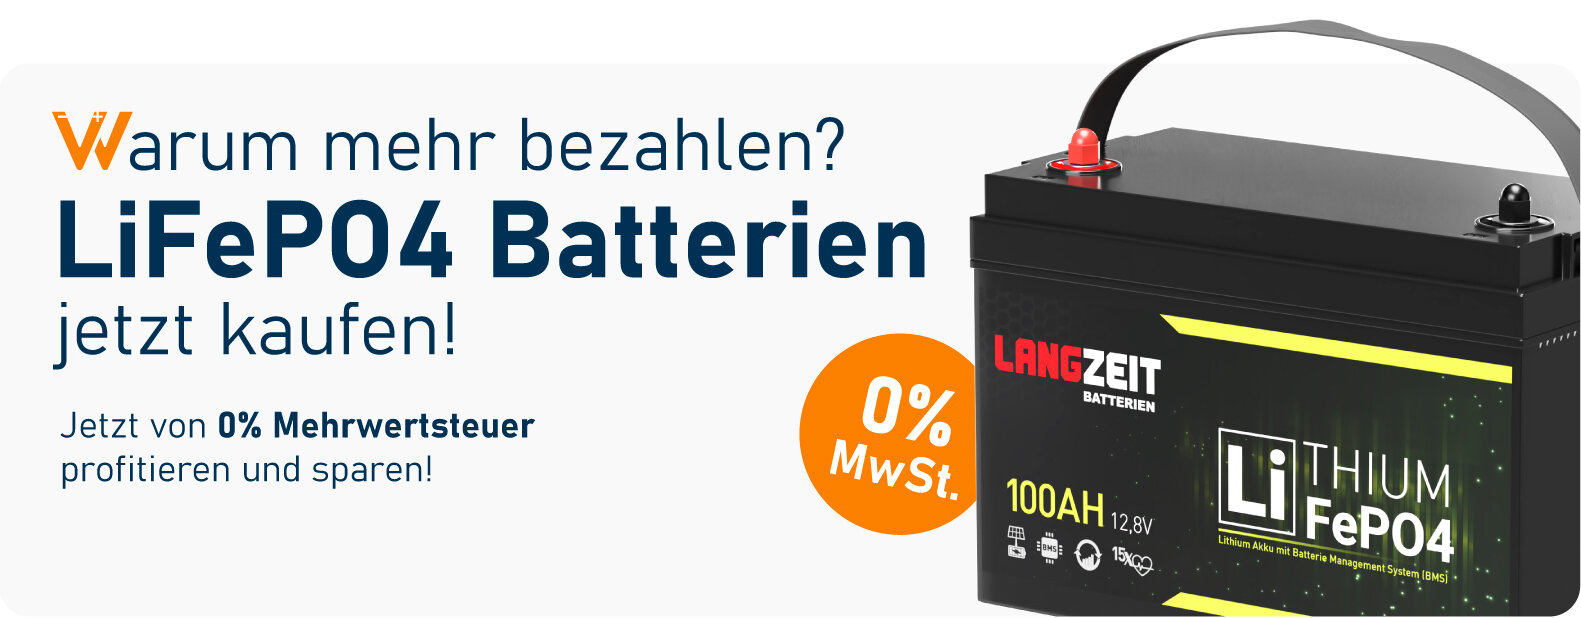 Warum mehr bezahlen? LiFePO4 Batterien jetzt kaufen!